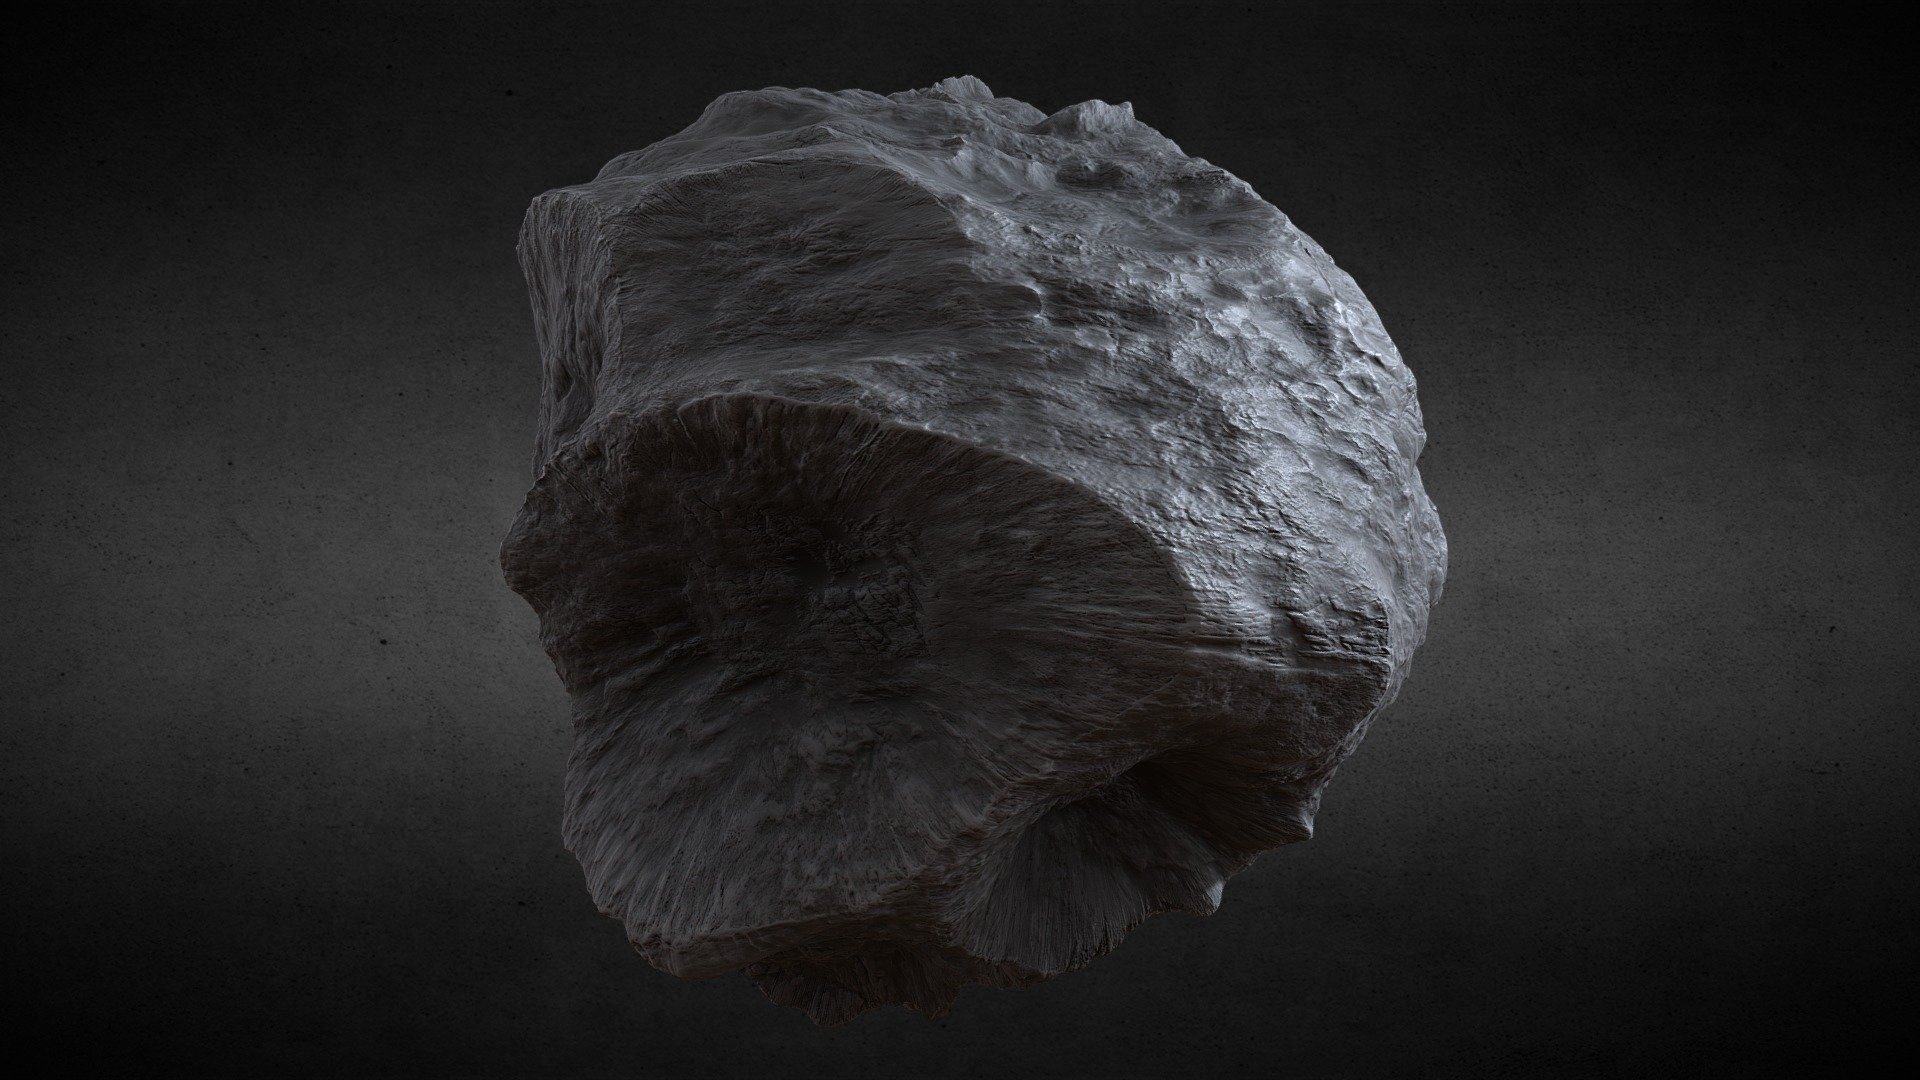 Moonstone Asteroid [Type-1]